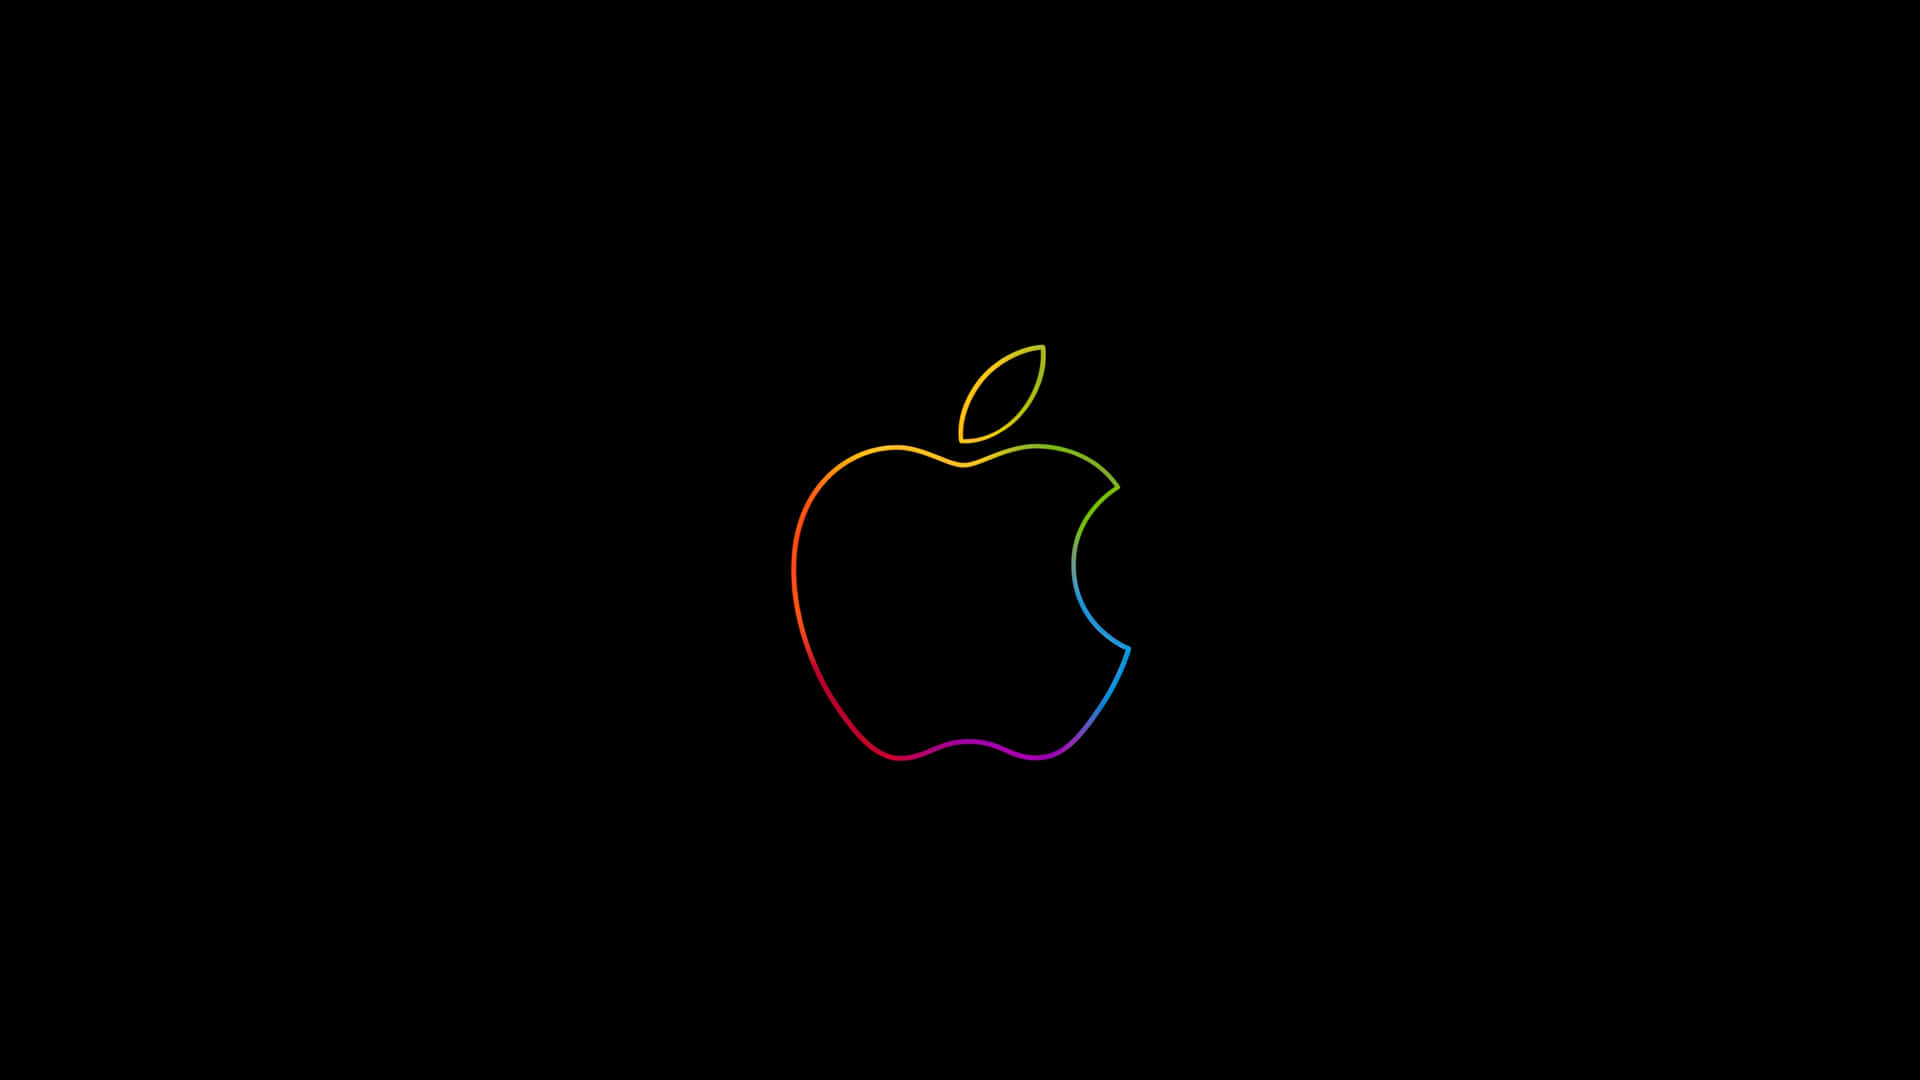 Fundode Tela Do Logo Da Apple 5120 X 2880